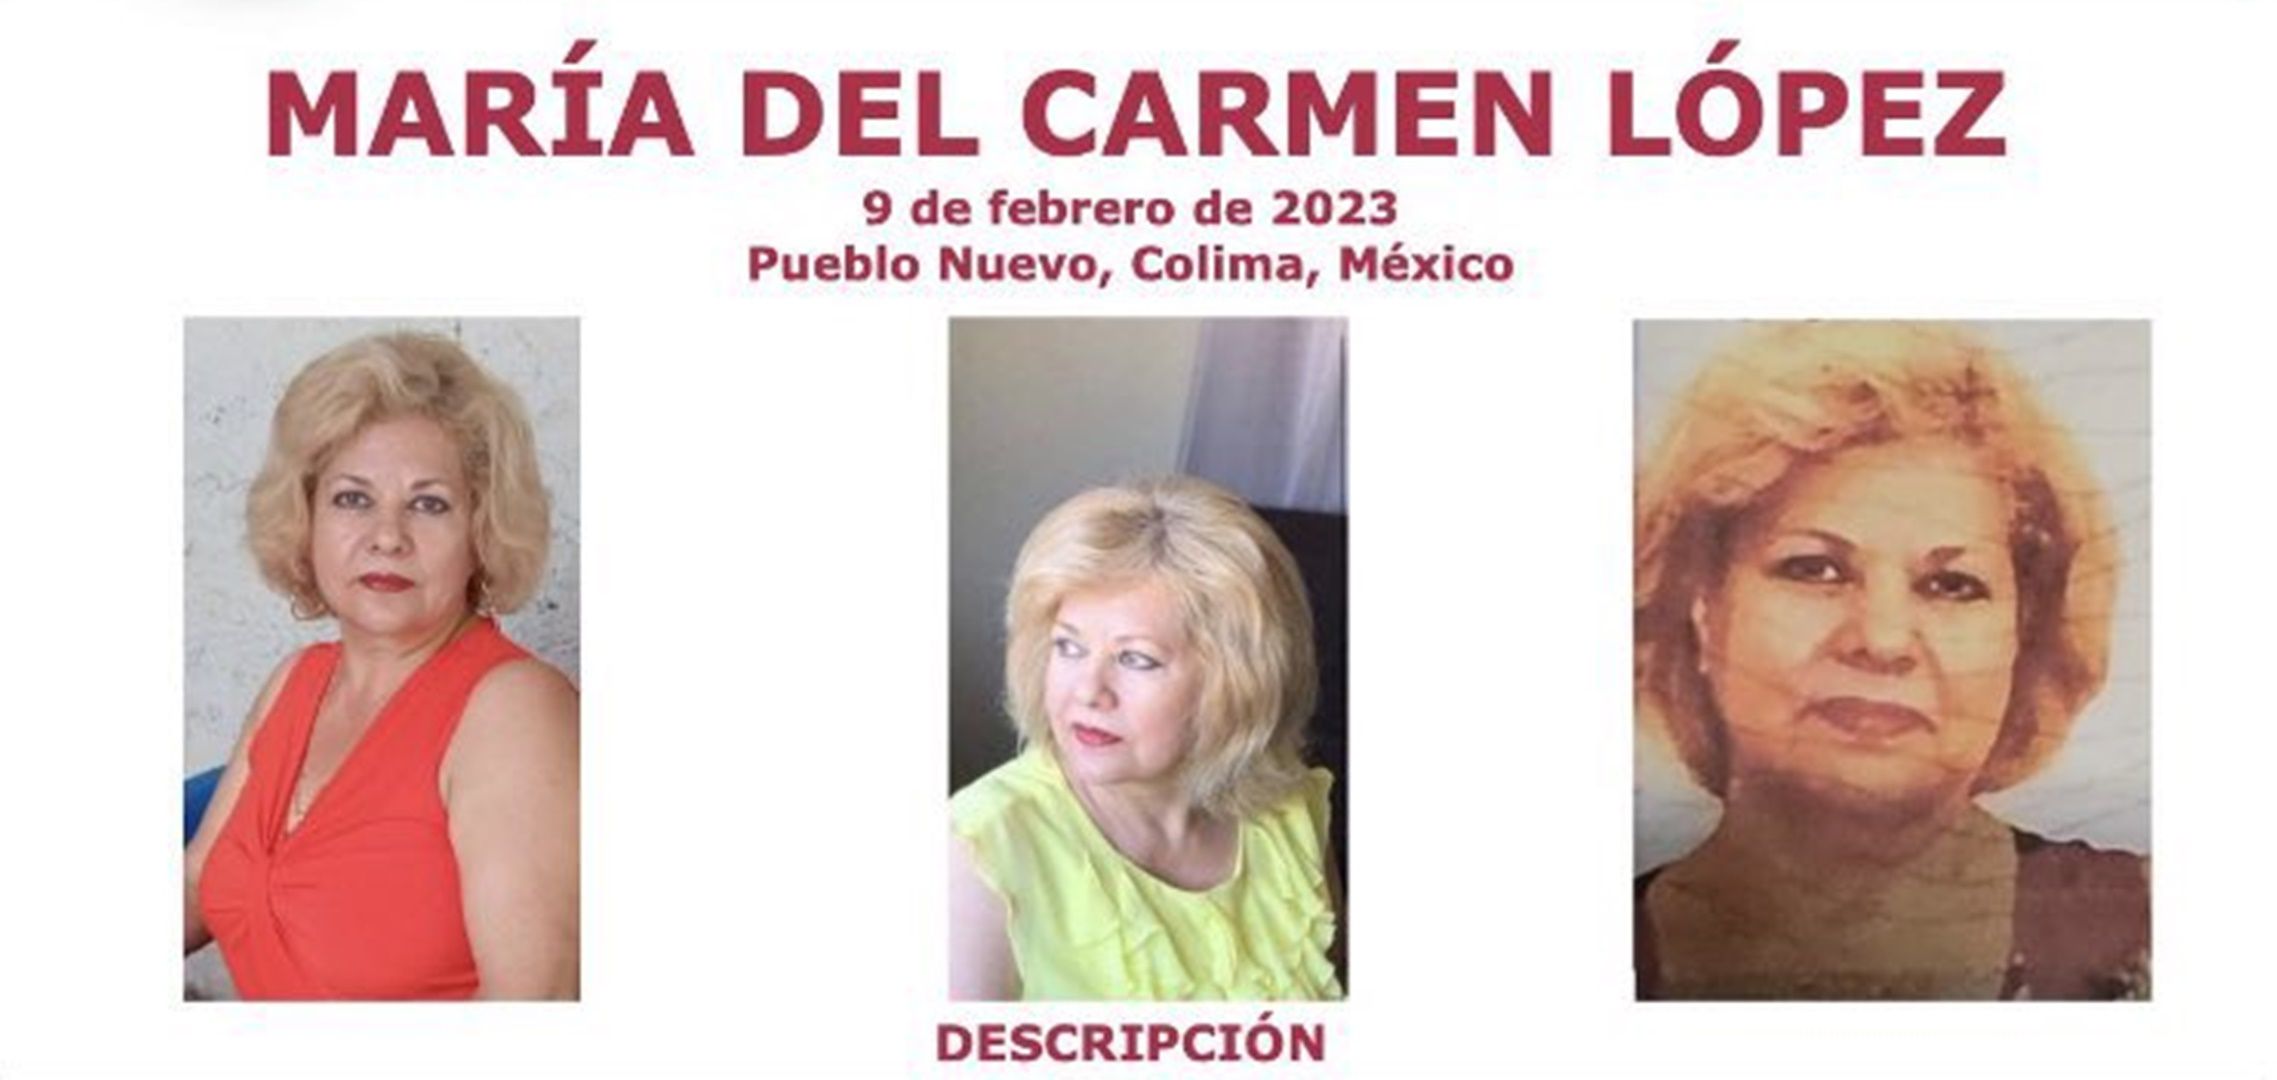 Secuestraron a otra mujer estadounidense ahora en Colima